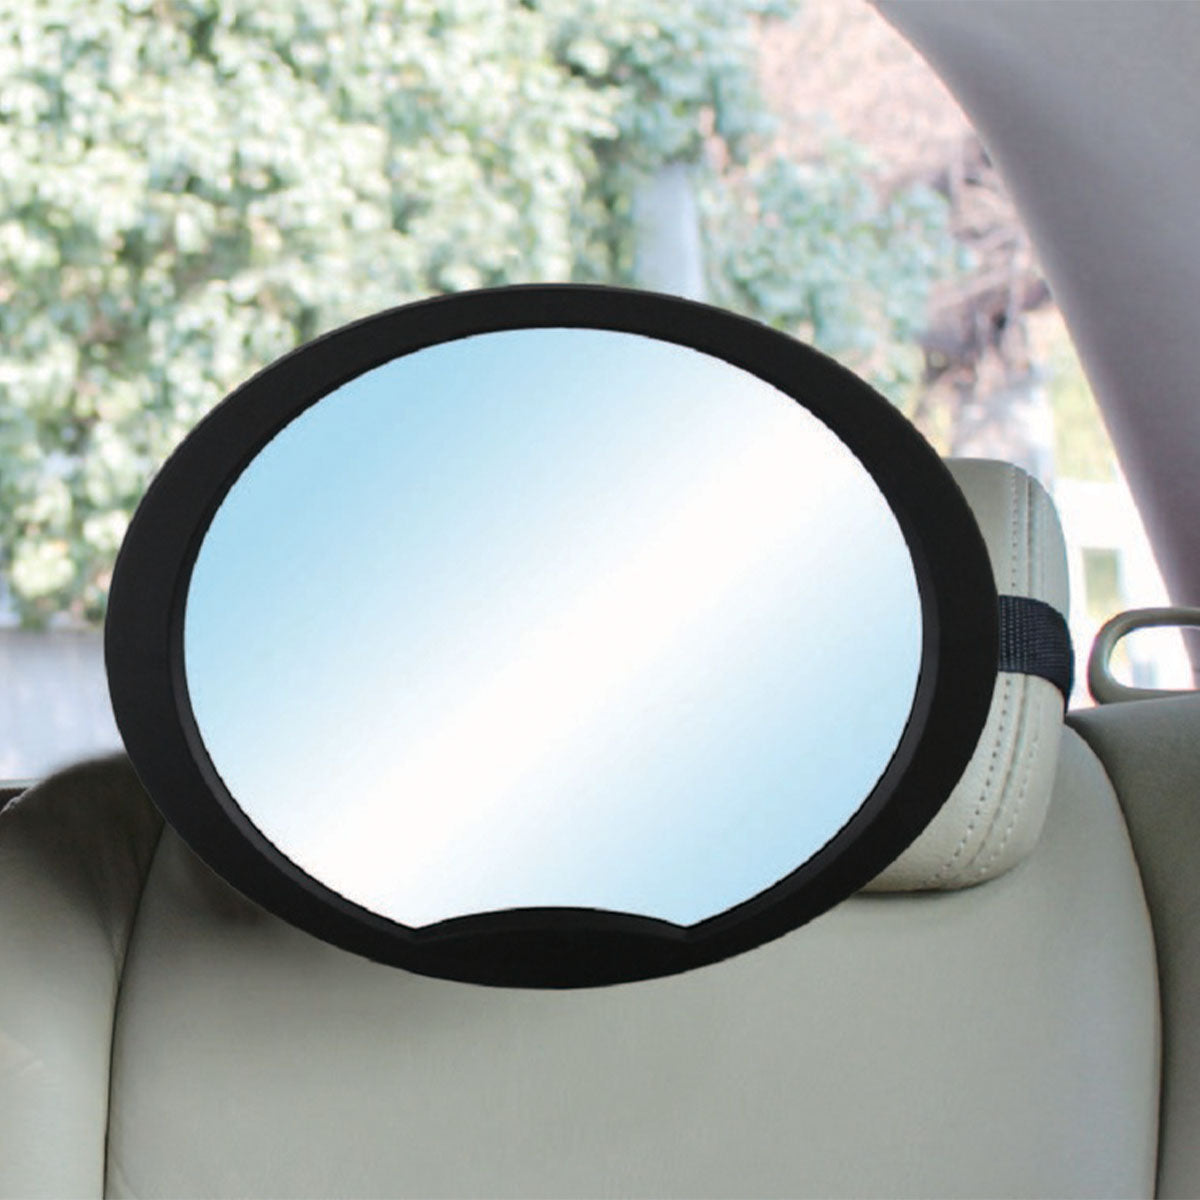 Met deze multispiegel van Babydan kan je eenvoudig jouw kindje via de achteruitkijkspiegel in de gaten houden wanneer het in een autostoeltje zit op de achterbank, dat tegen de rijrichting in is geplaatst. VanZus.